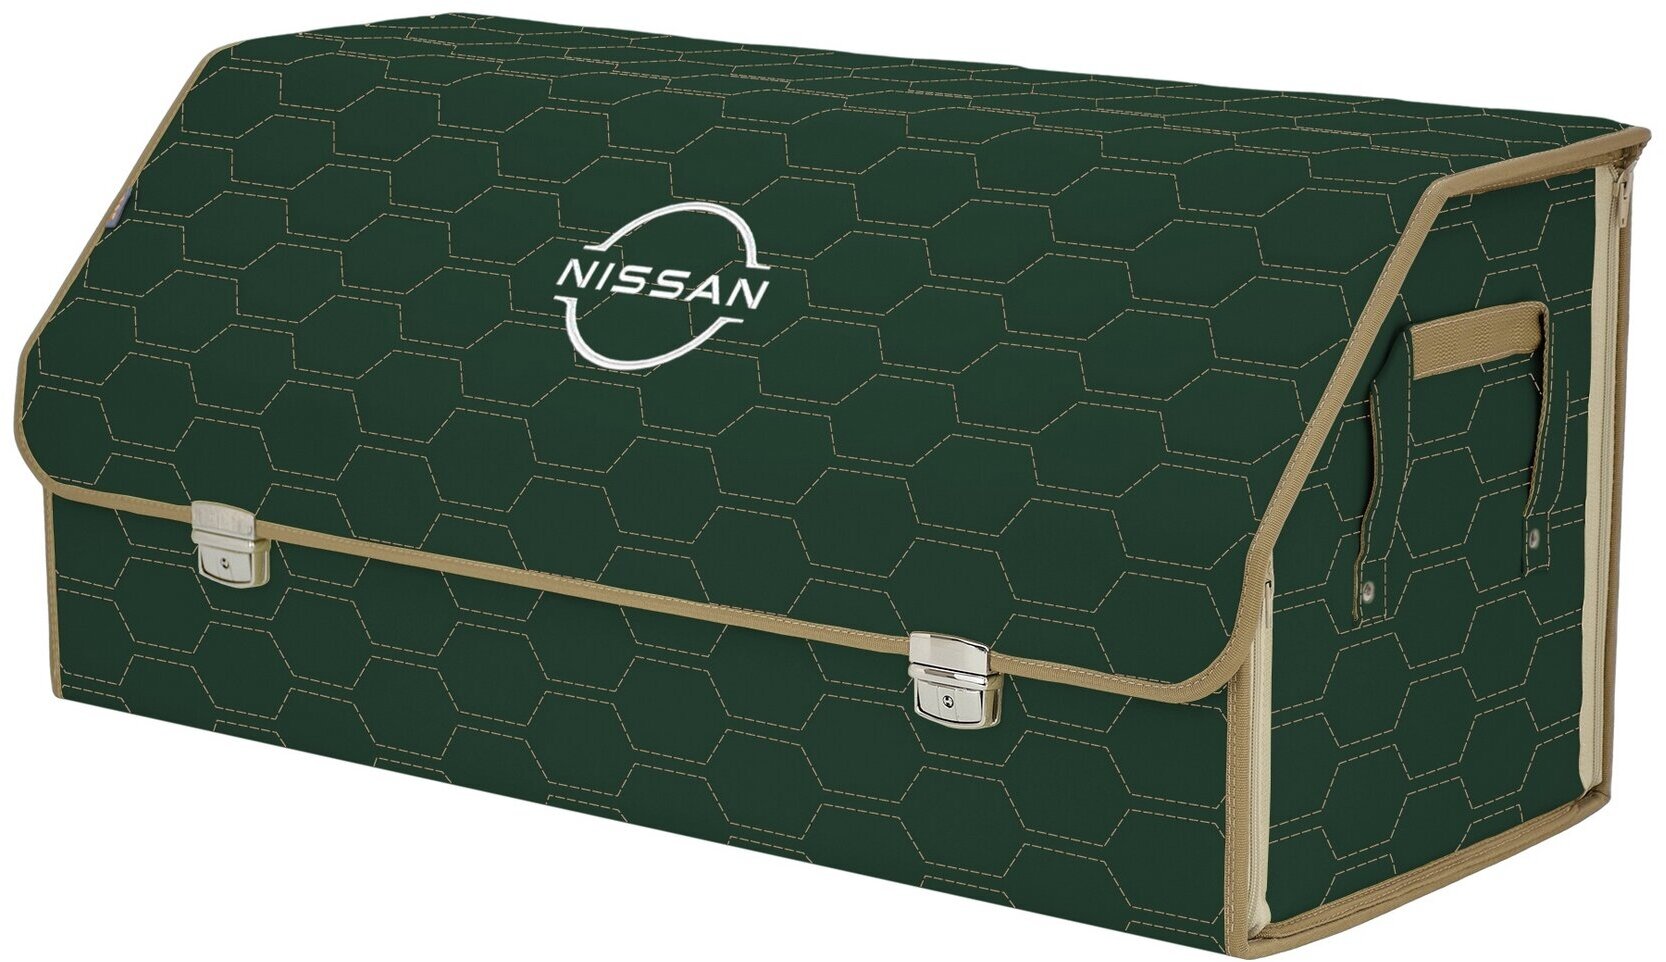 Органайзер-саквояж в багажник "Союз Премиум" (размер XXL). Цвет: зеленый с бежевой прострочкой Соты и вышивкой Nissan (Ниссан).